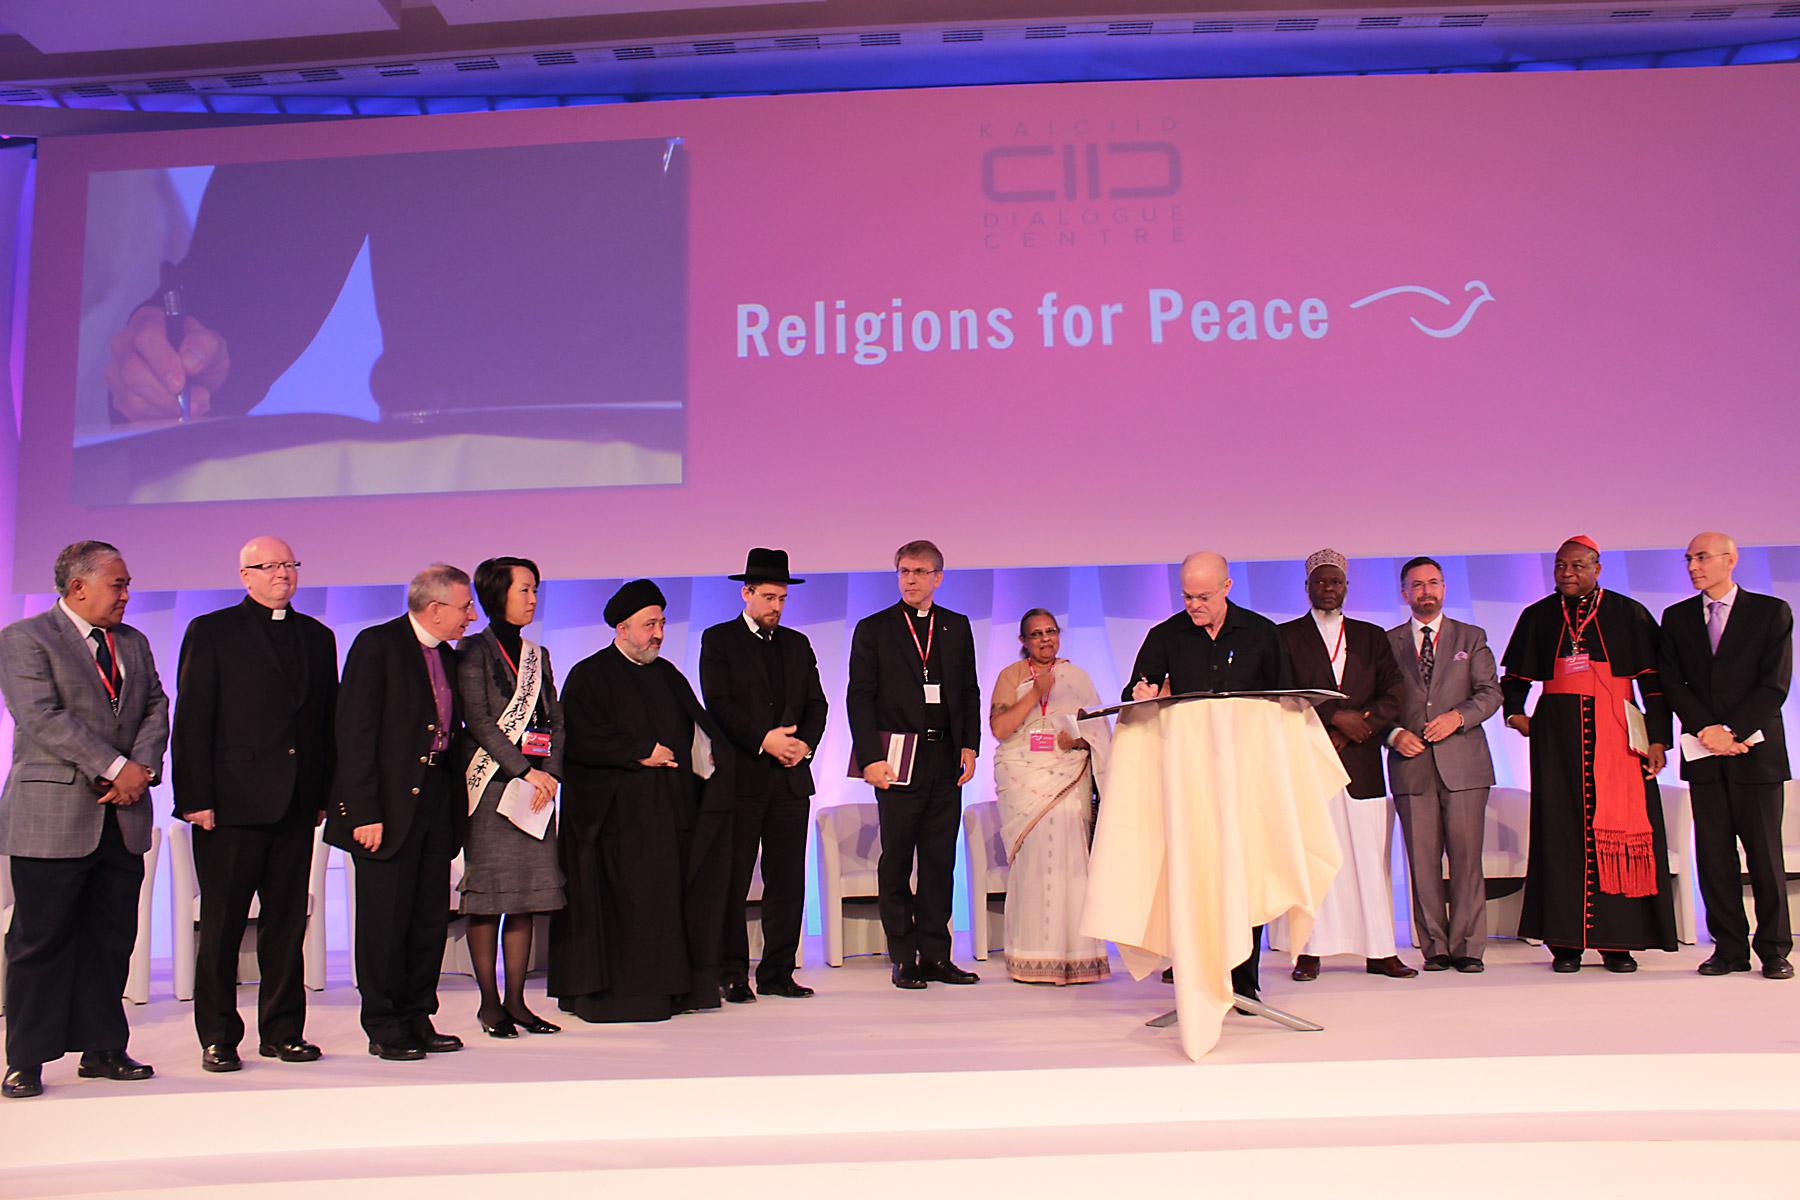 LWB-Präsident Younan (dritter von links) bei der Weltversammlung der Religionen für den Frieden. Foto: Religionen für den Frieden